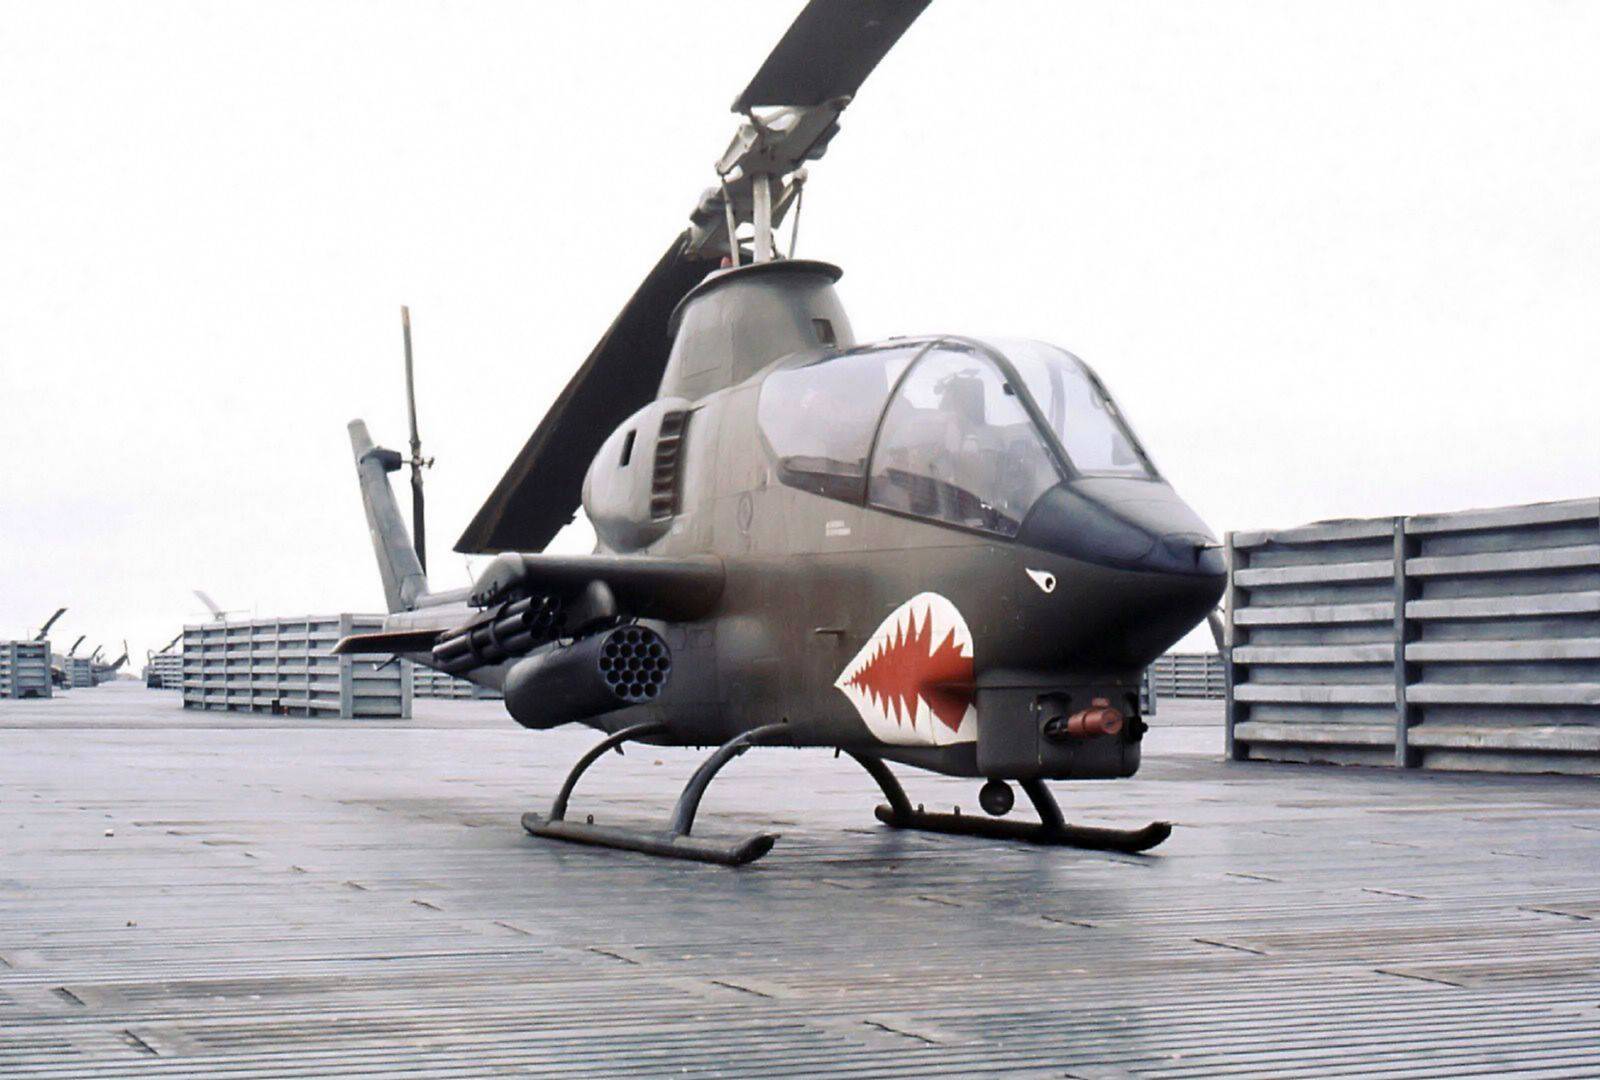 Cobra g. Вертолет Ah-1g Cobra. Ah-1 Cobra Vietnam. Вертолёт Ah-1g Cobra во Вьетнаме. Bell Ah-1 Cobra во Вьетнаме.